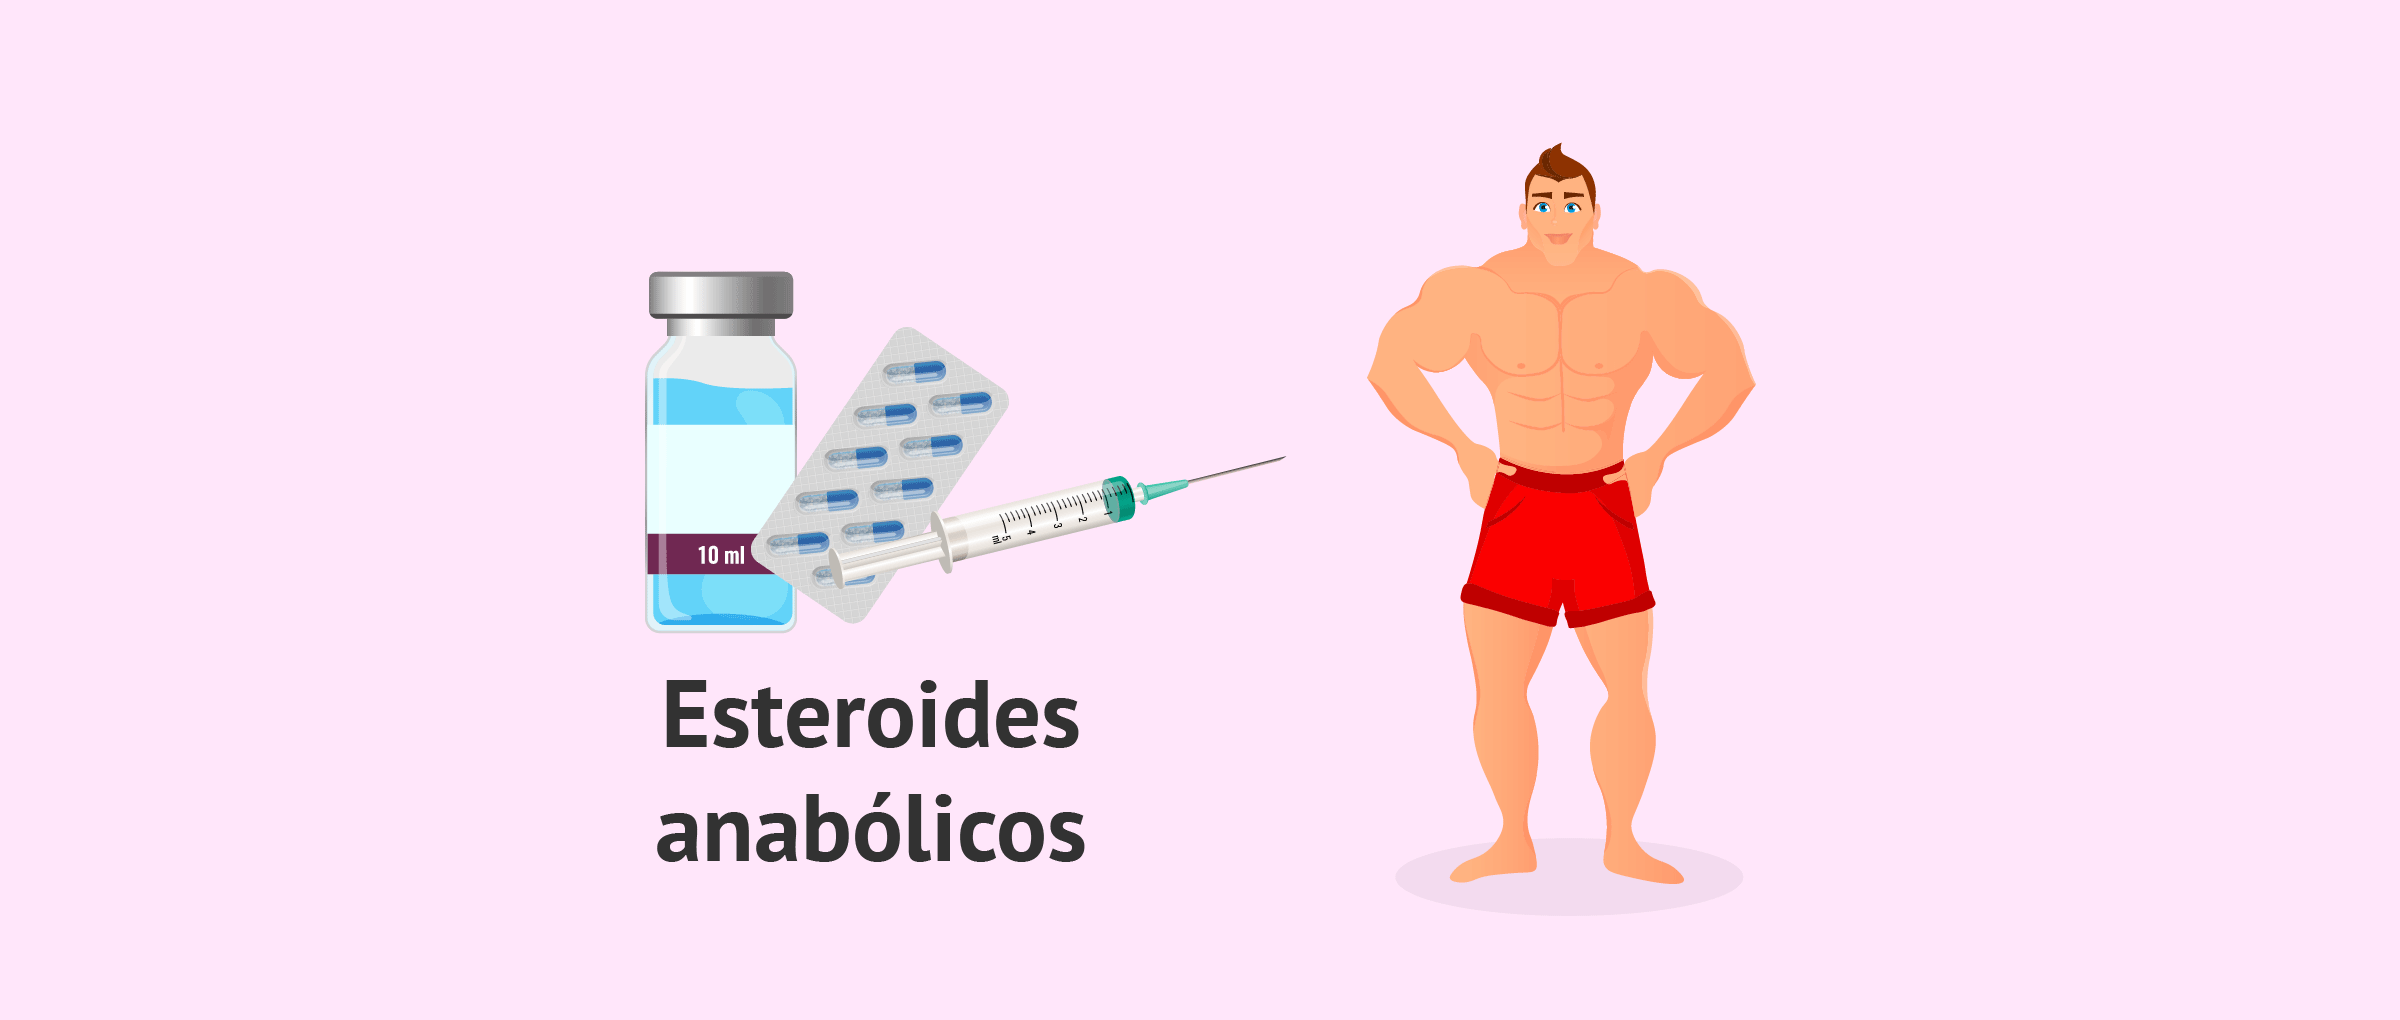 Las 3 formas realmente obvias de esteroides anabolicos orales mejor que nunca